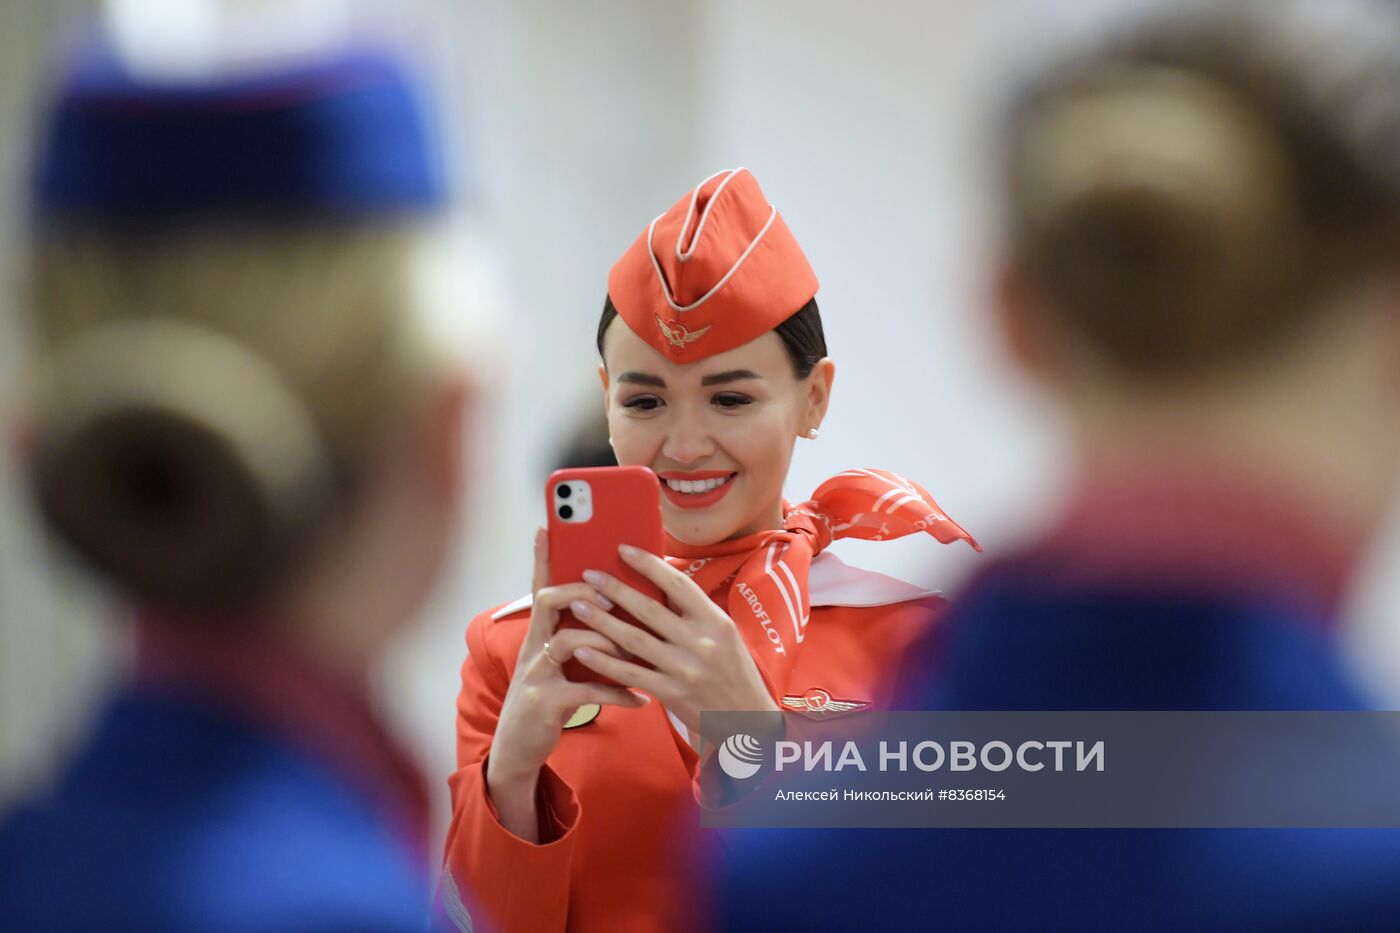 Президент РФ В. Путин принял участие в мероприятиях по случаю 100-летия российской гражданской авиации